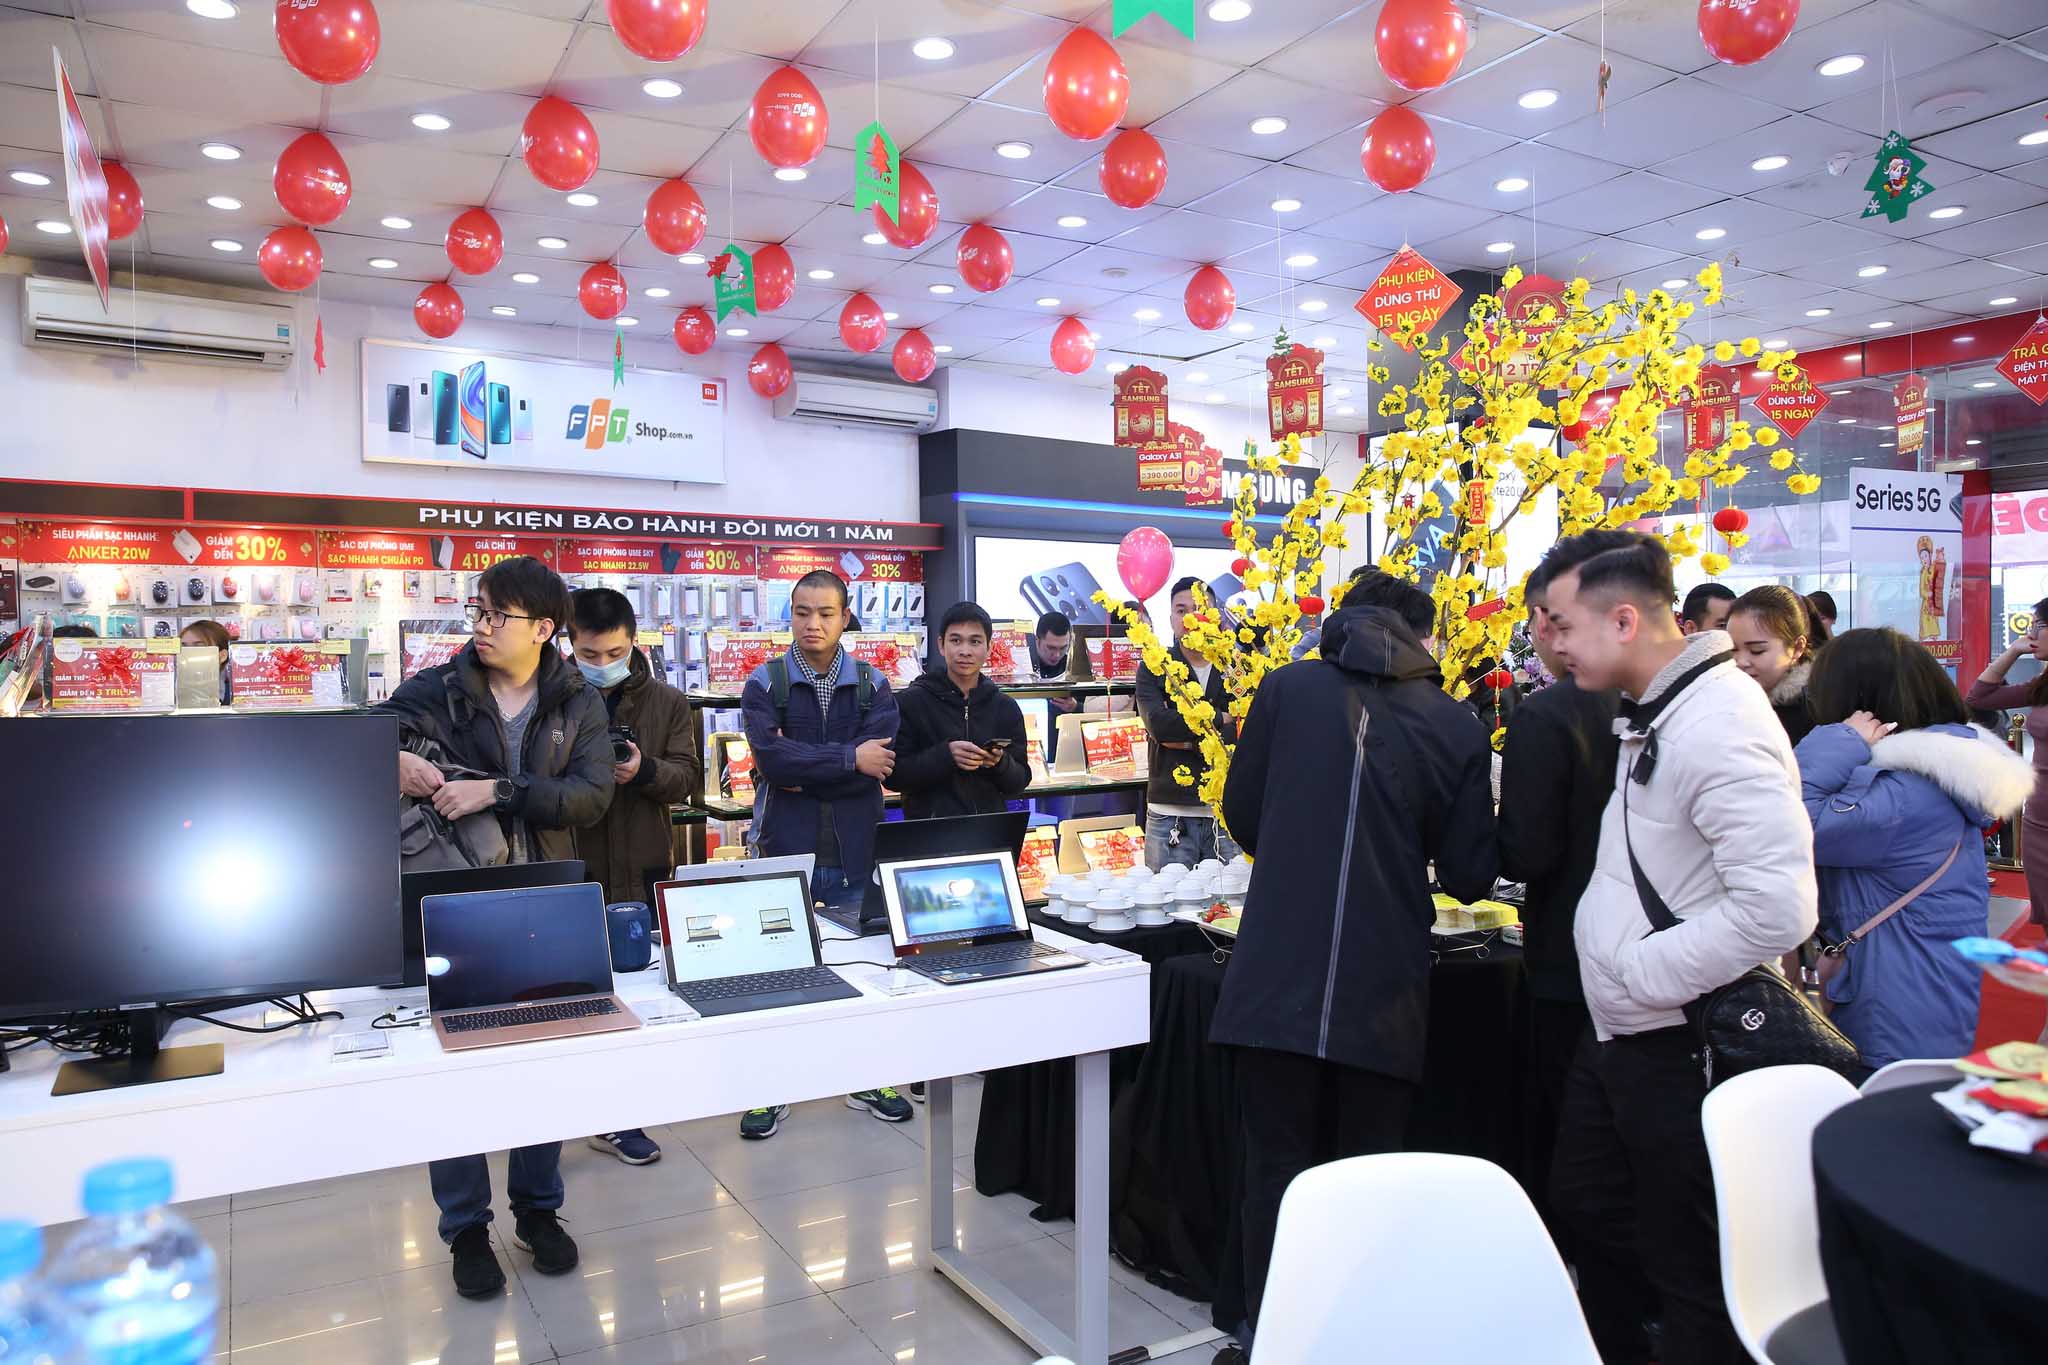 GfK: FPT Shop chiếm 31% thị phần, đứng đầu thị trường bán lẻ Laptop